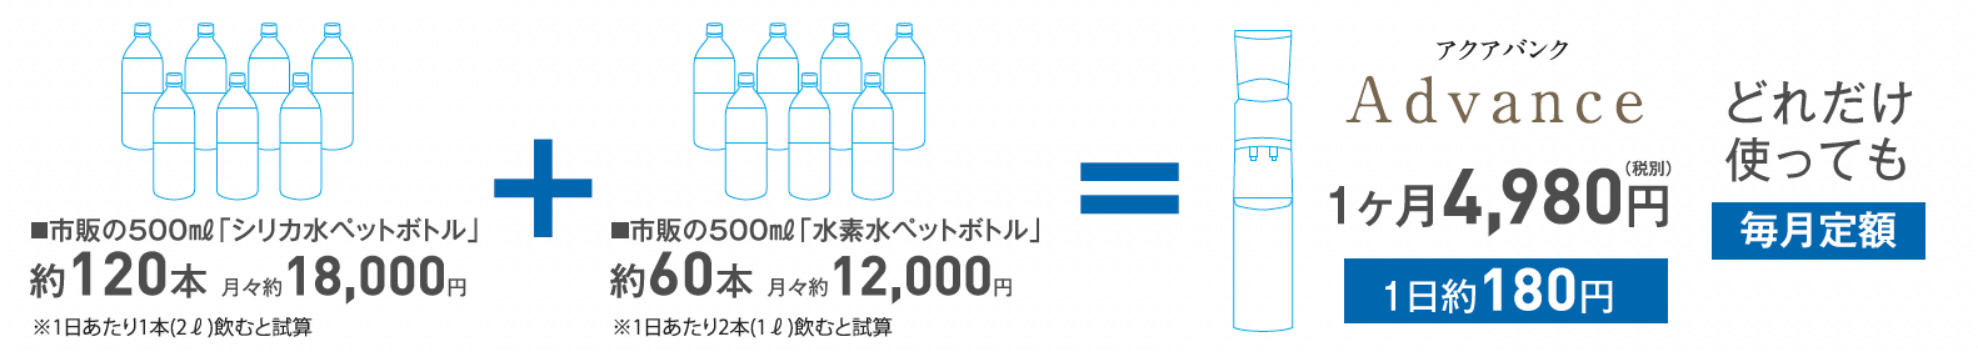 市販のシリカ水・水素水を購入すると月々約30,000円、アクアバンクAdbanceなら1日約180円、どれだけ使っても毎月定額です